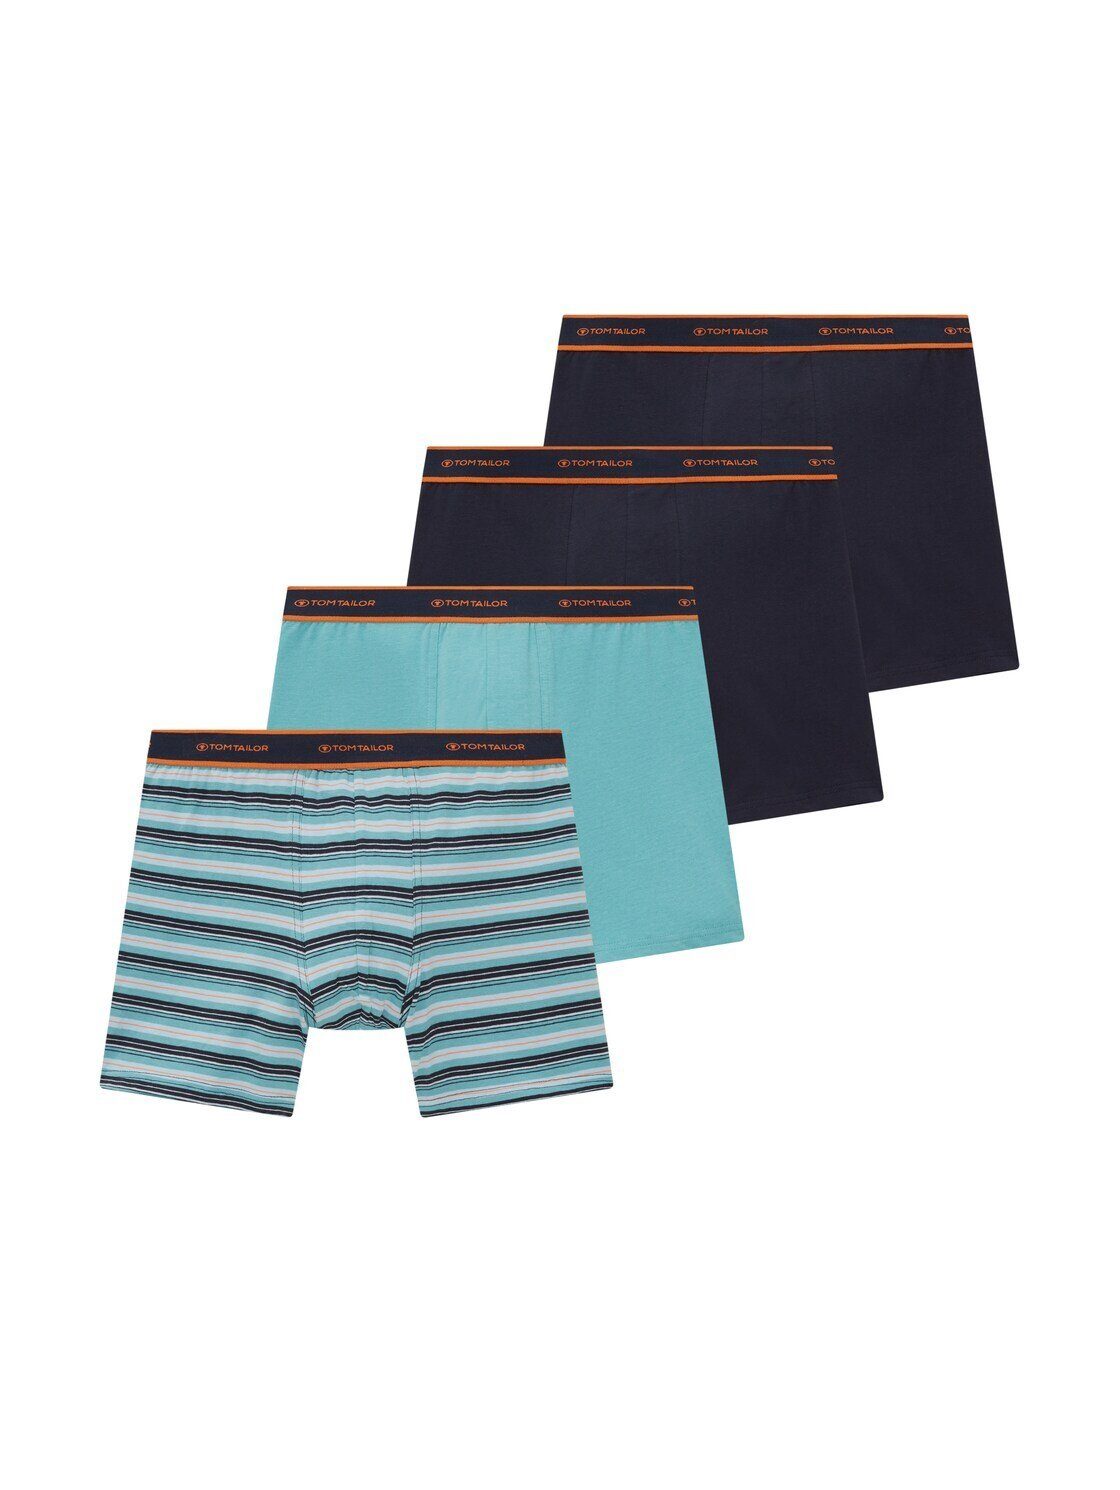 green-medium-horizontal TAILOR Long 4er Viererpack) Pants Boxershorts stripe (im TOM Pack im